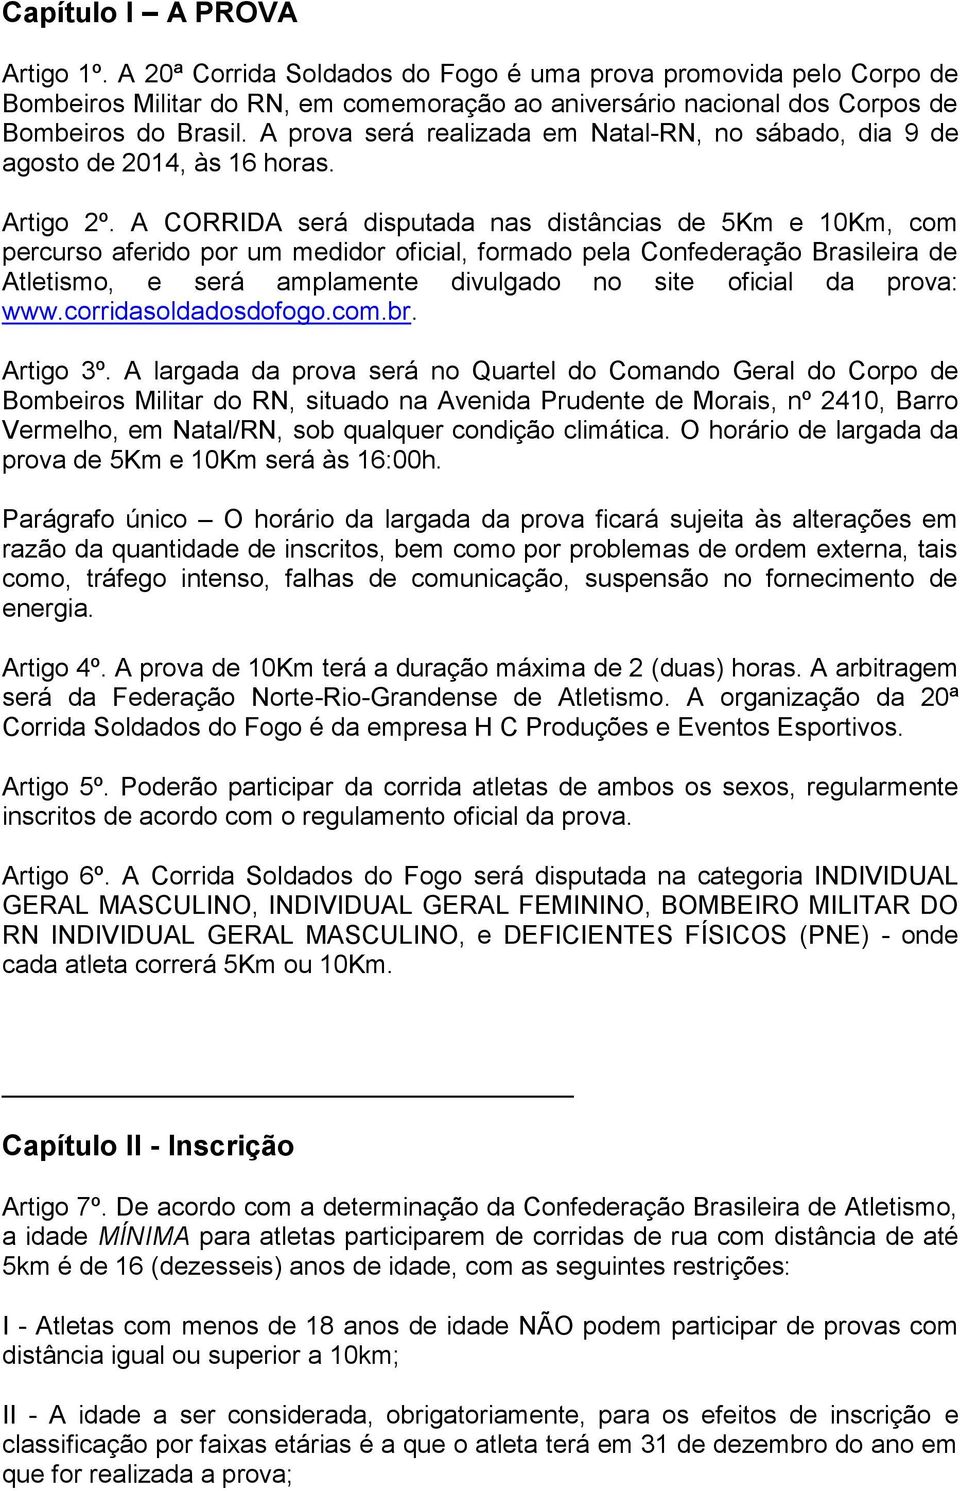 A CORRIDA será disputada nas distâncias de 5Km e 10Km, com percurso aferido por um medidor oficial, formado pela Confederação Brasileira de Atletismo, e será amplamente divulgado no site oficial da